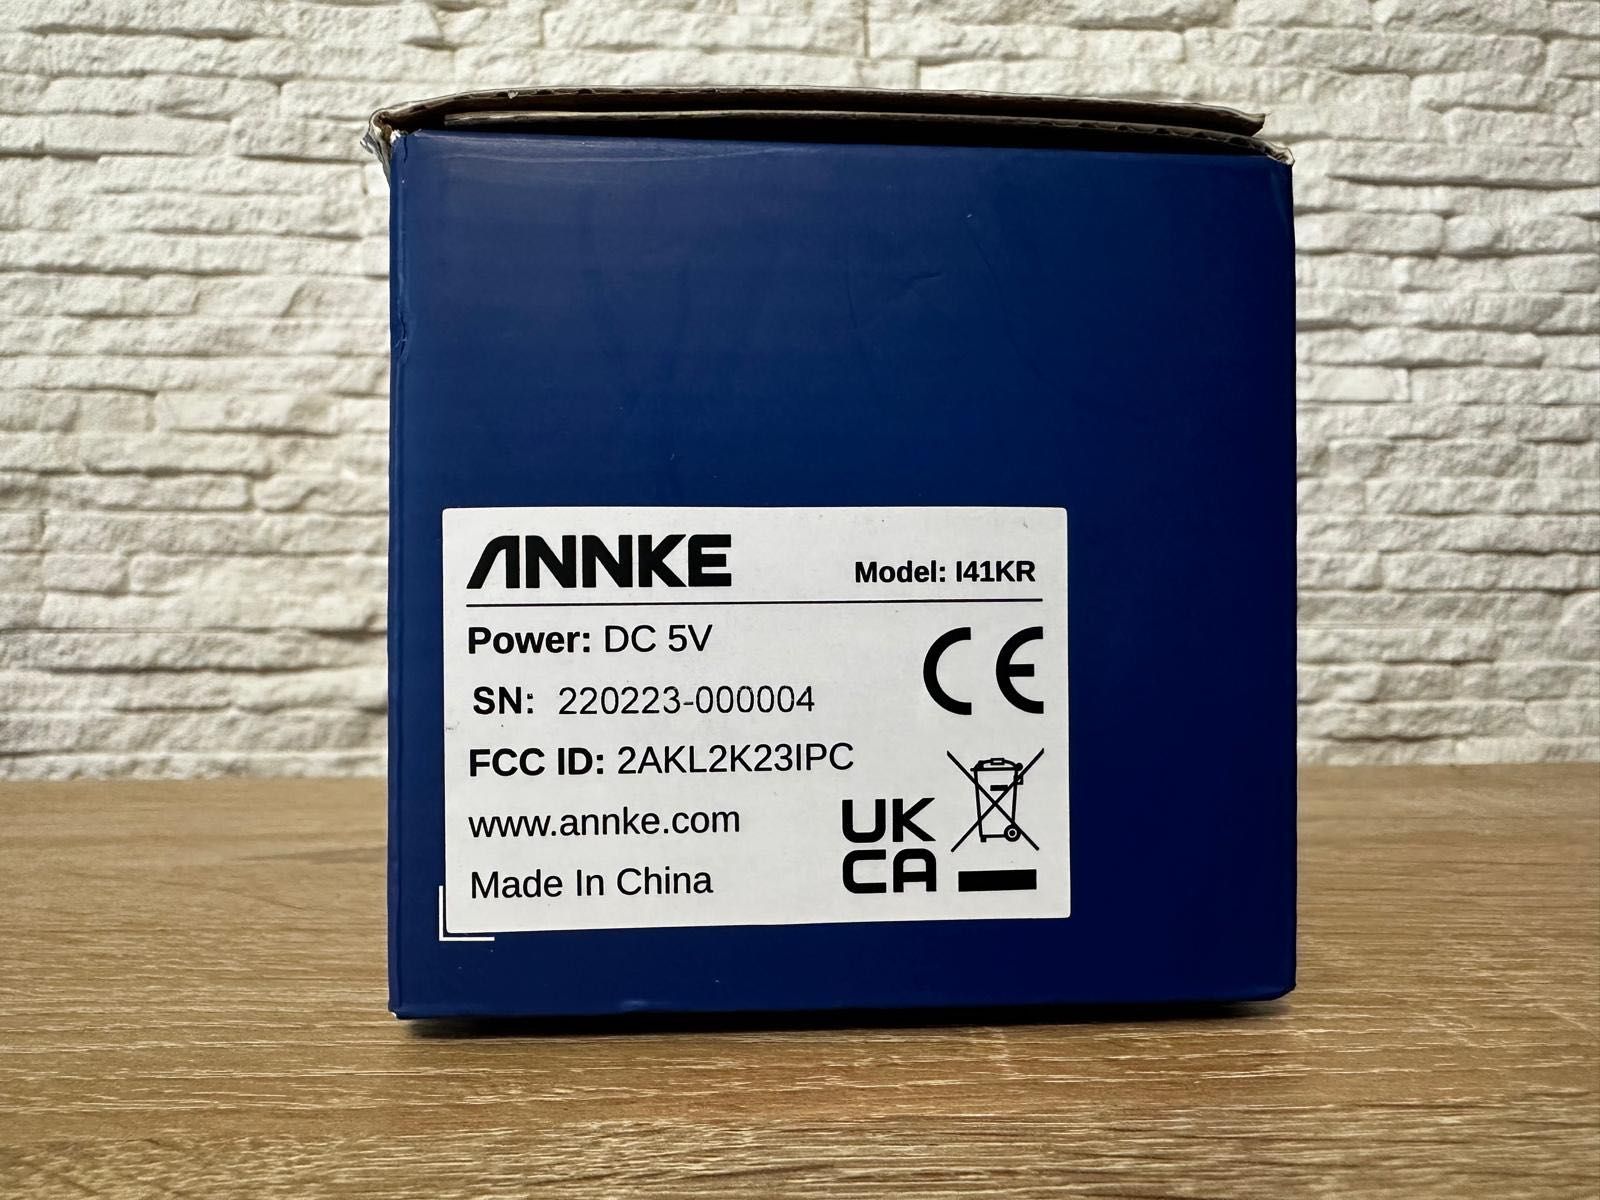 Annke Kamera Wewnętrzna 2MP I41KR